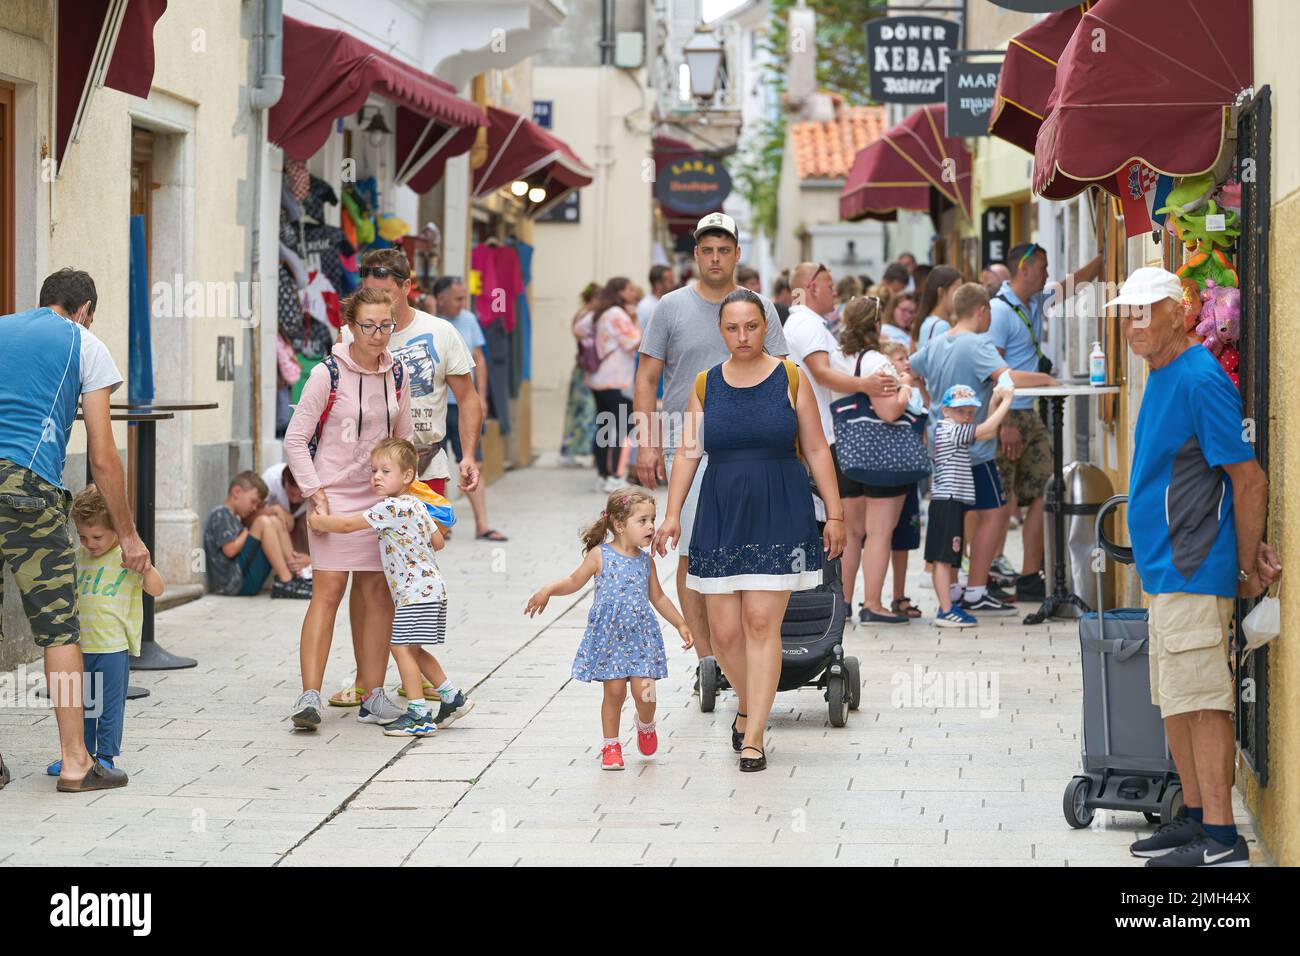 Touristes dans une allée avec des magasins dans la vieille ville de Krk en Croatie Banque D'Images